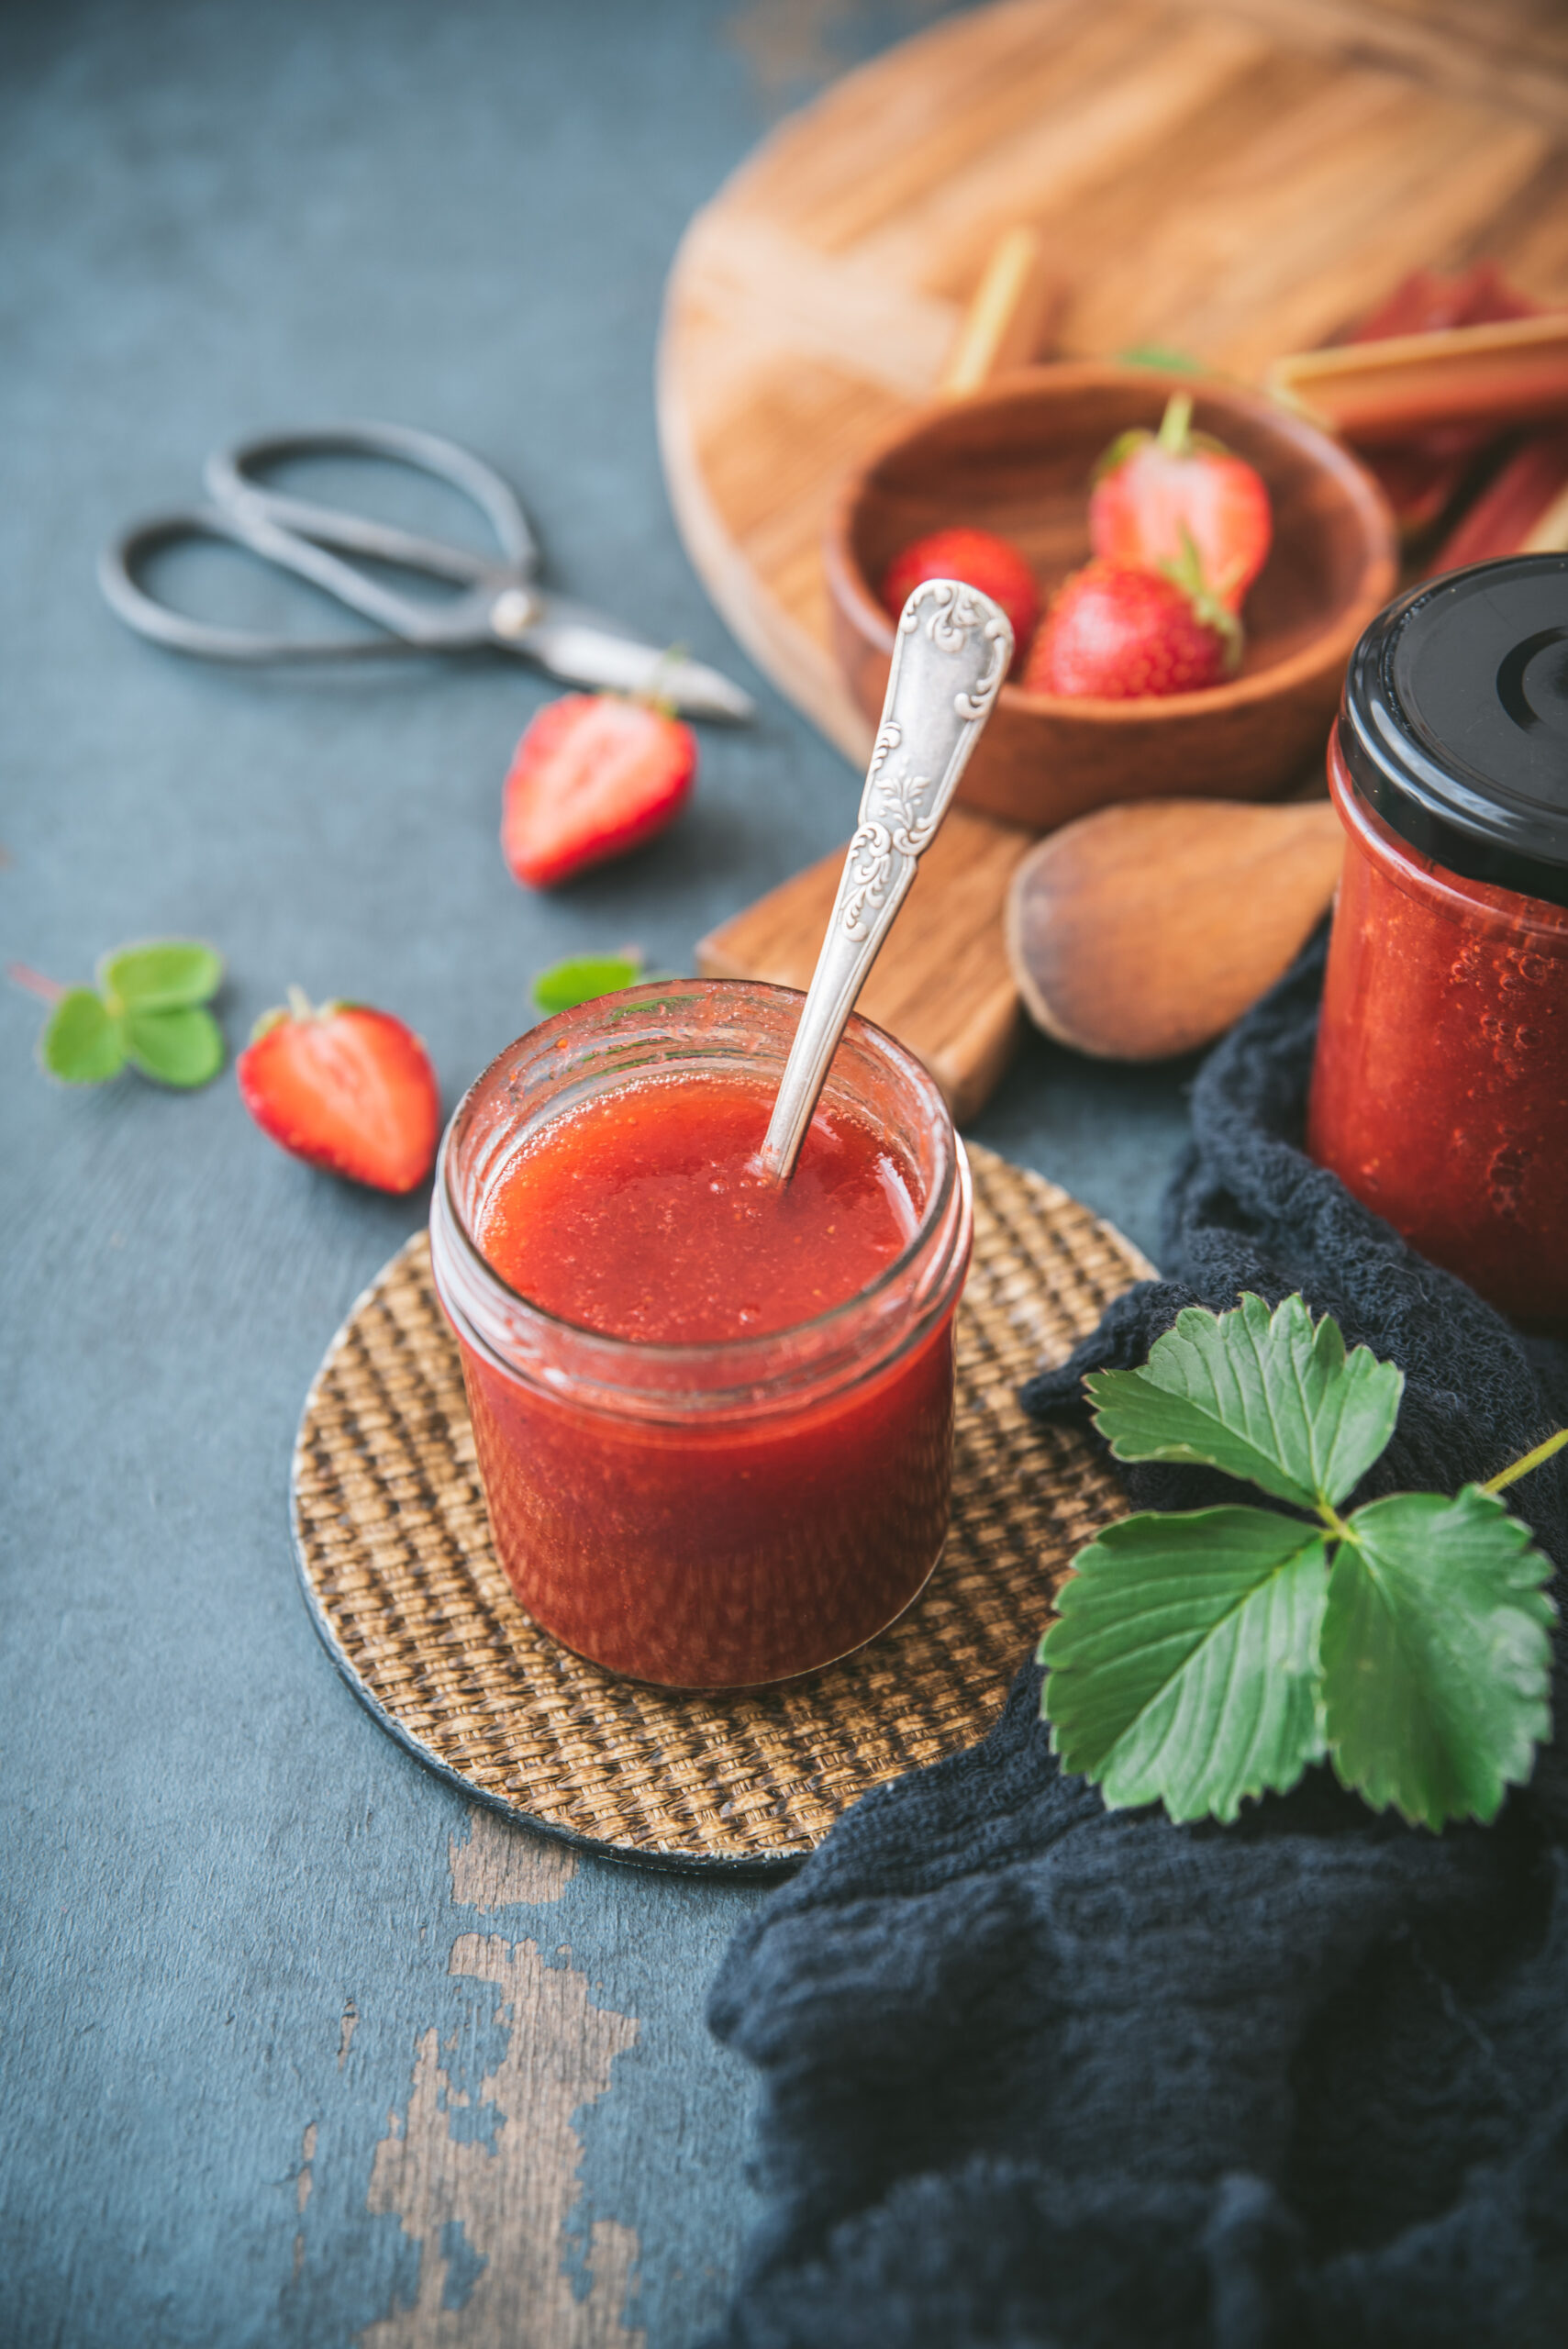 Strawberry Rhubarb Jam Homemade Recipe